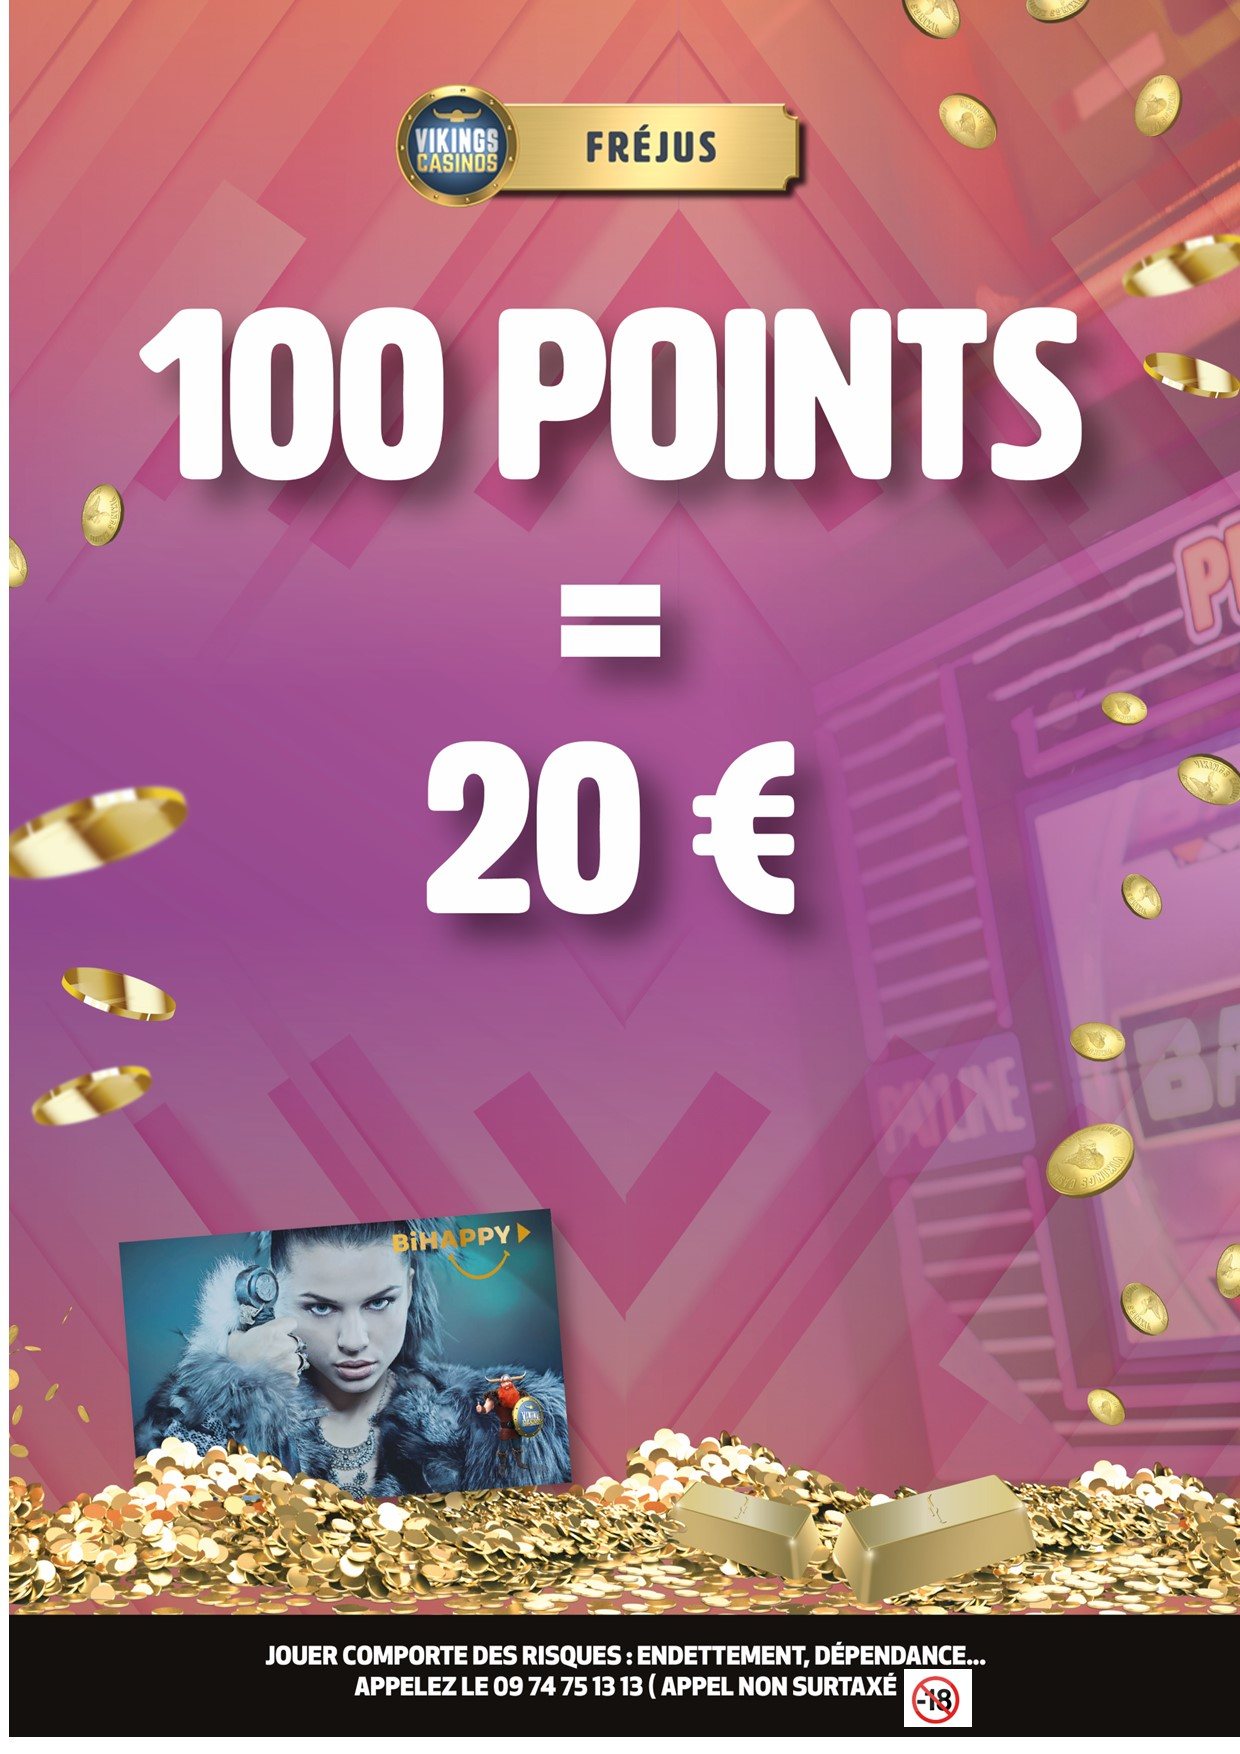 Gagnez 20€ en cumulant 100 pts